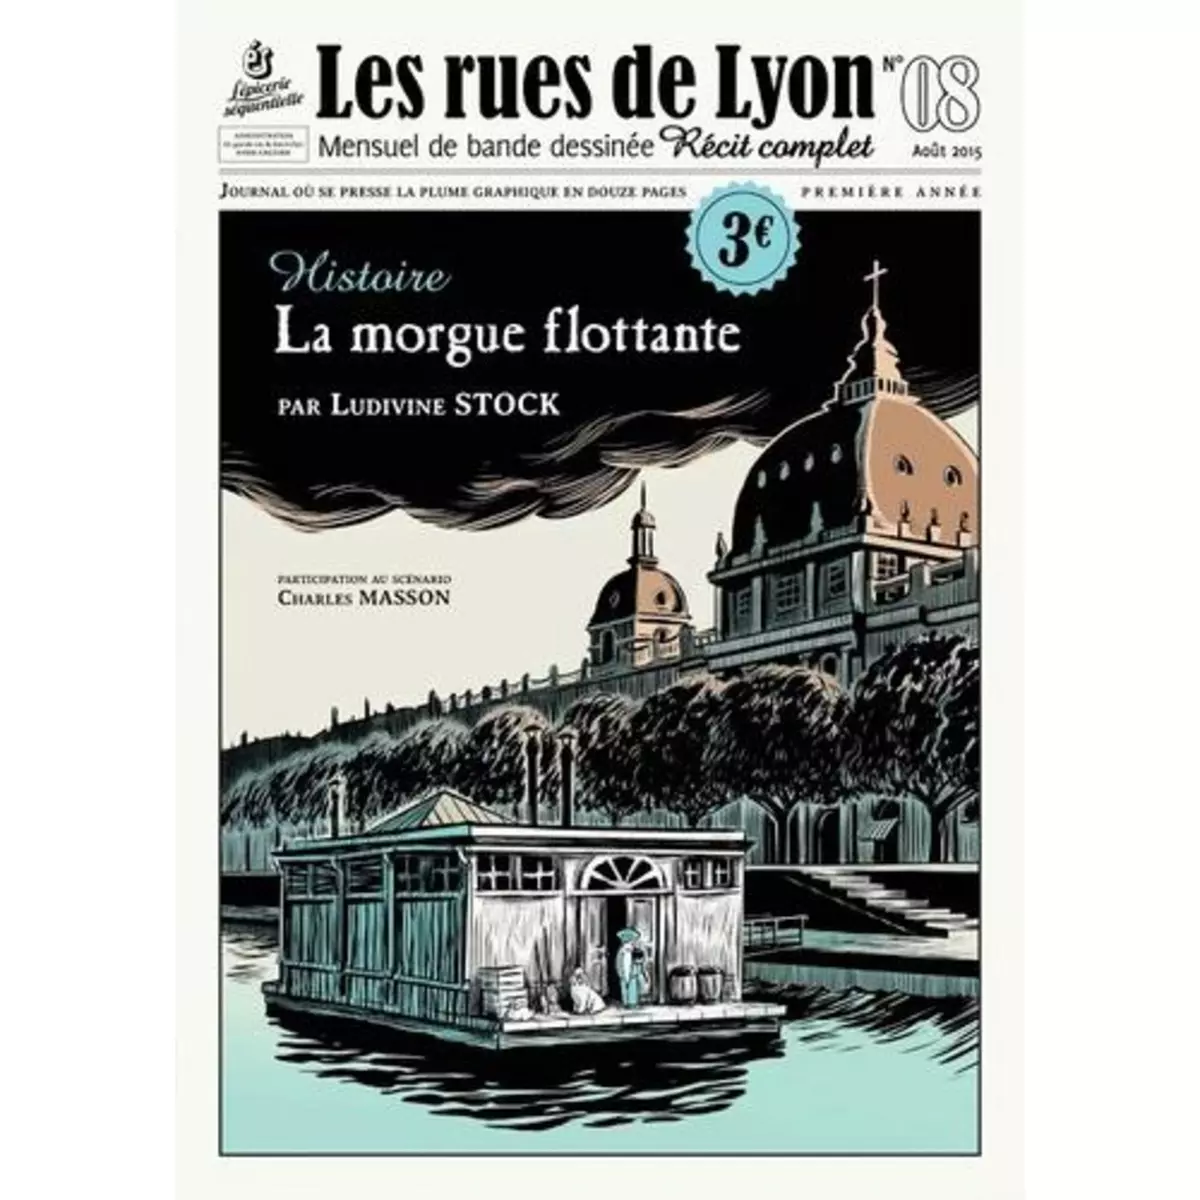  LES RUES DE LYON N° 8 : LA MORGUE FLOTTANTE, Stock Ludivine